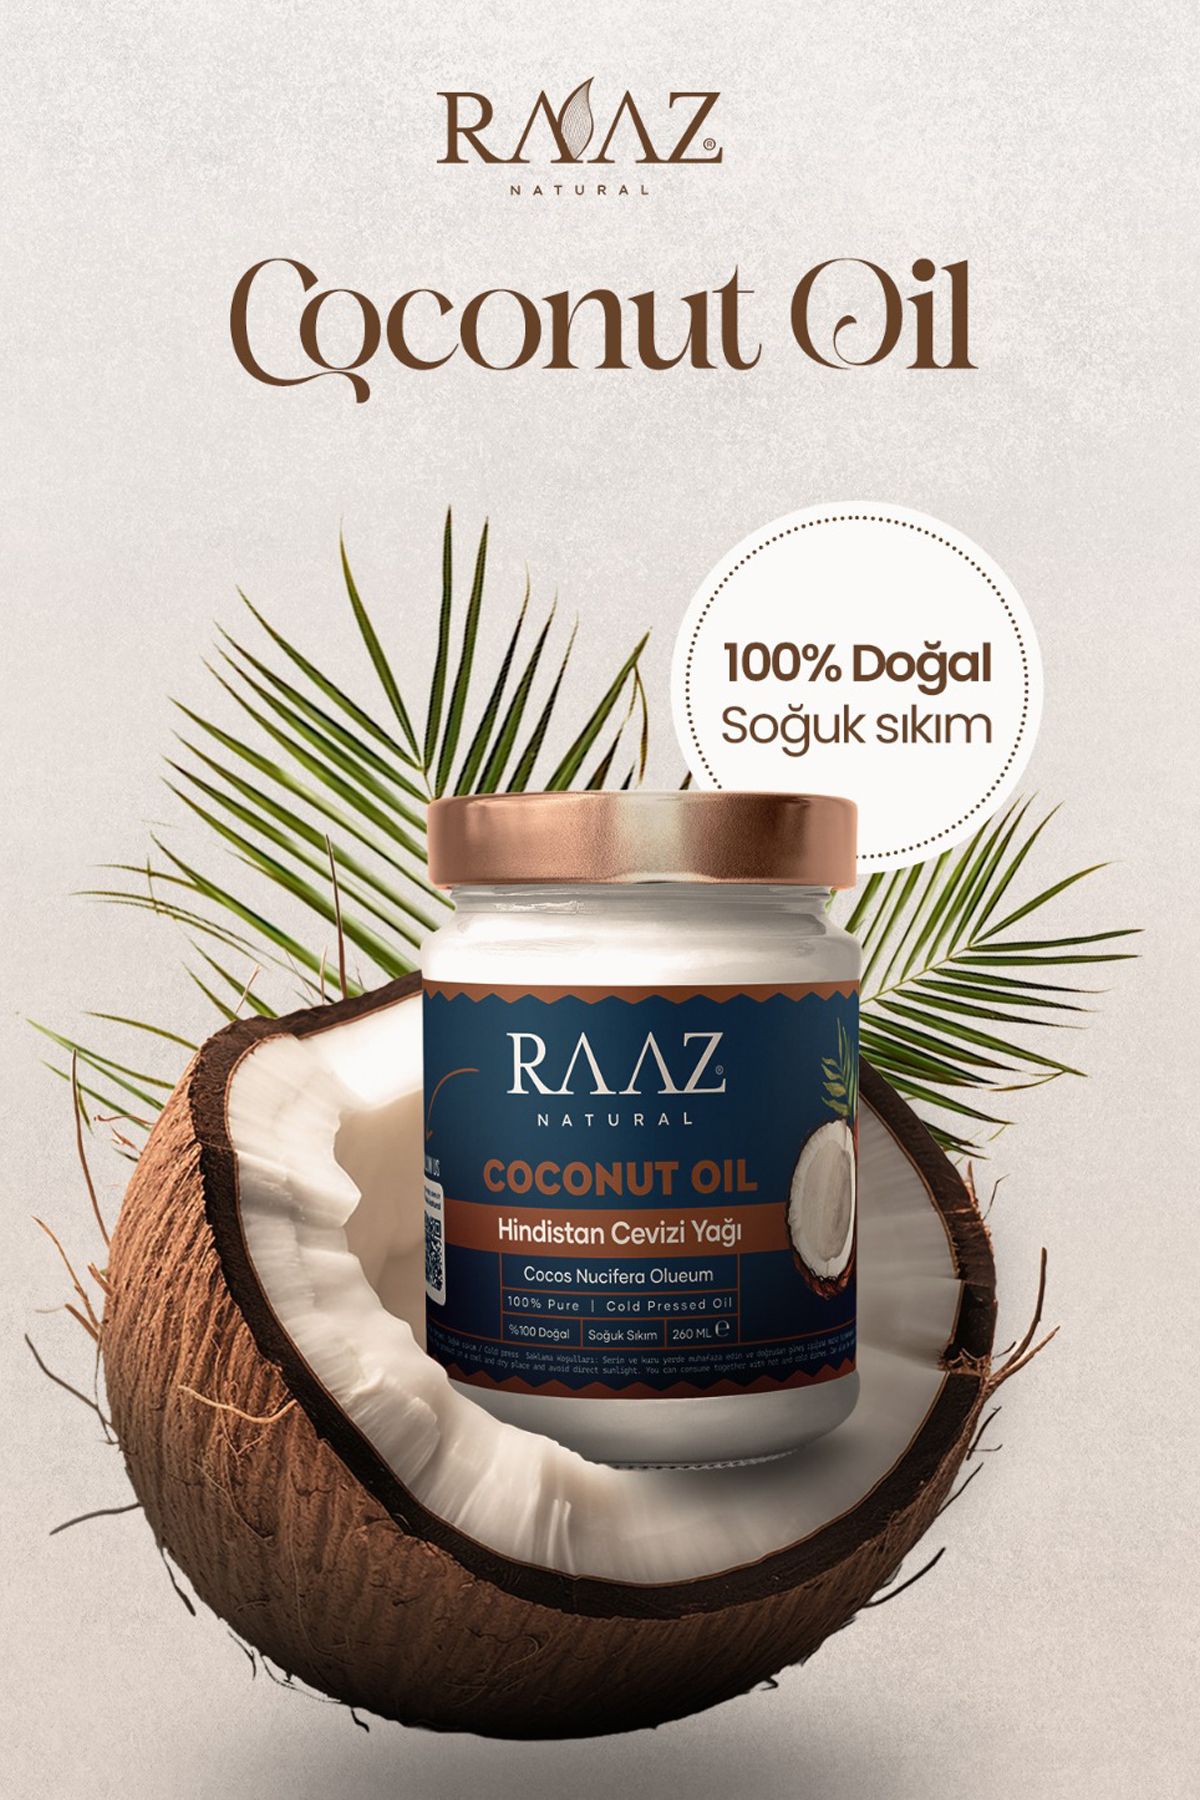 RAAZ Hindistan cevizi yağı soğuk sıkım Coconut oil 260 ml